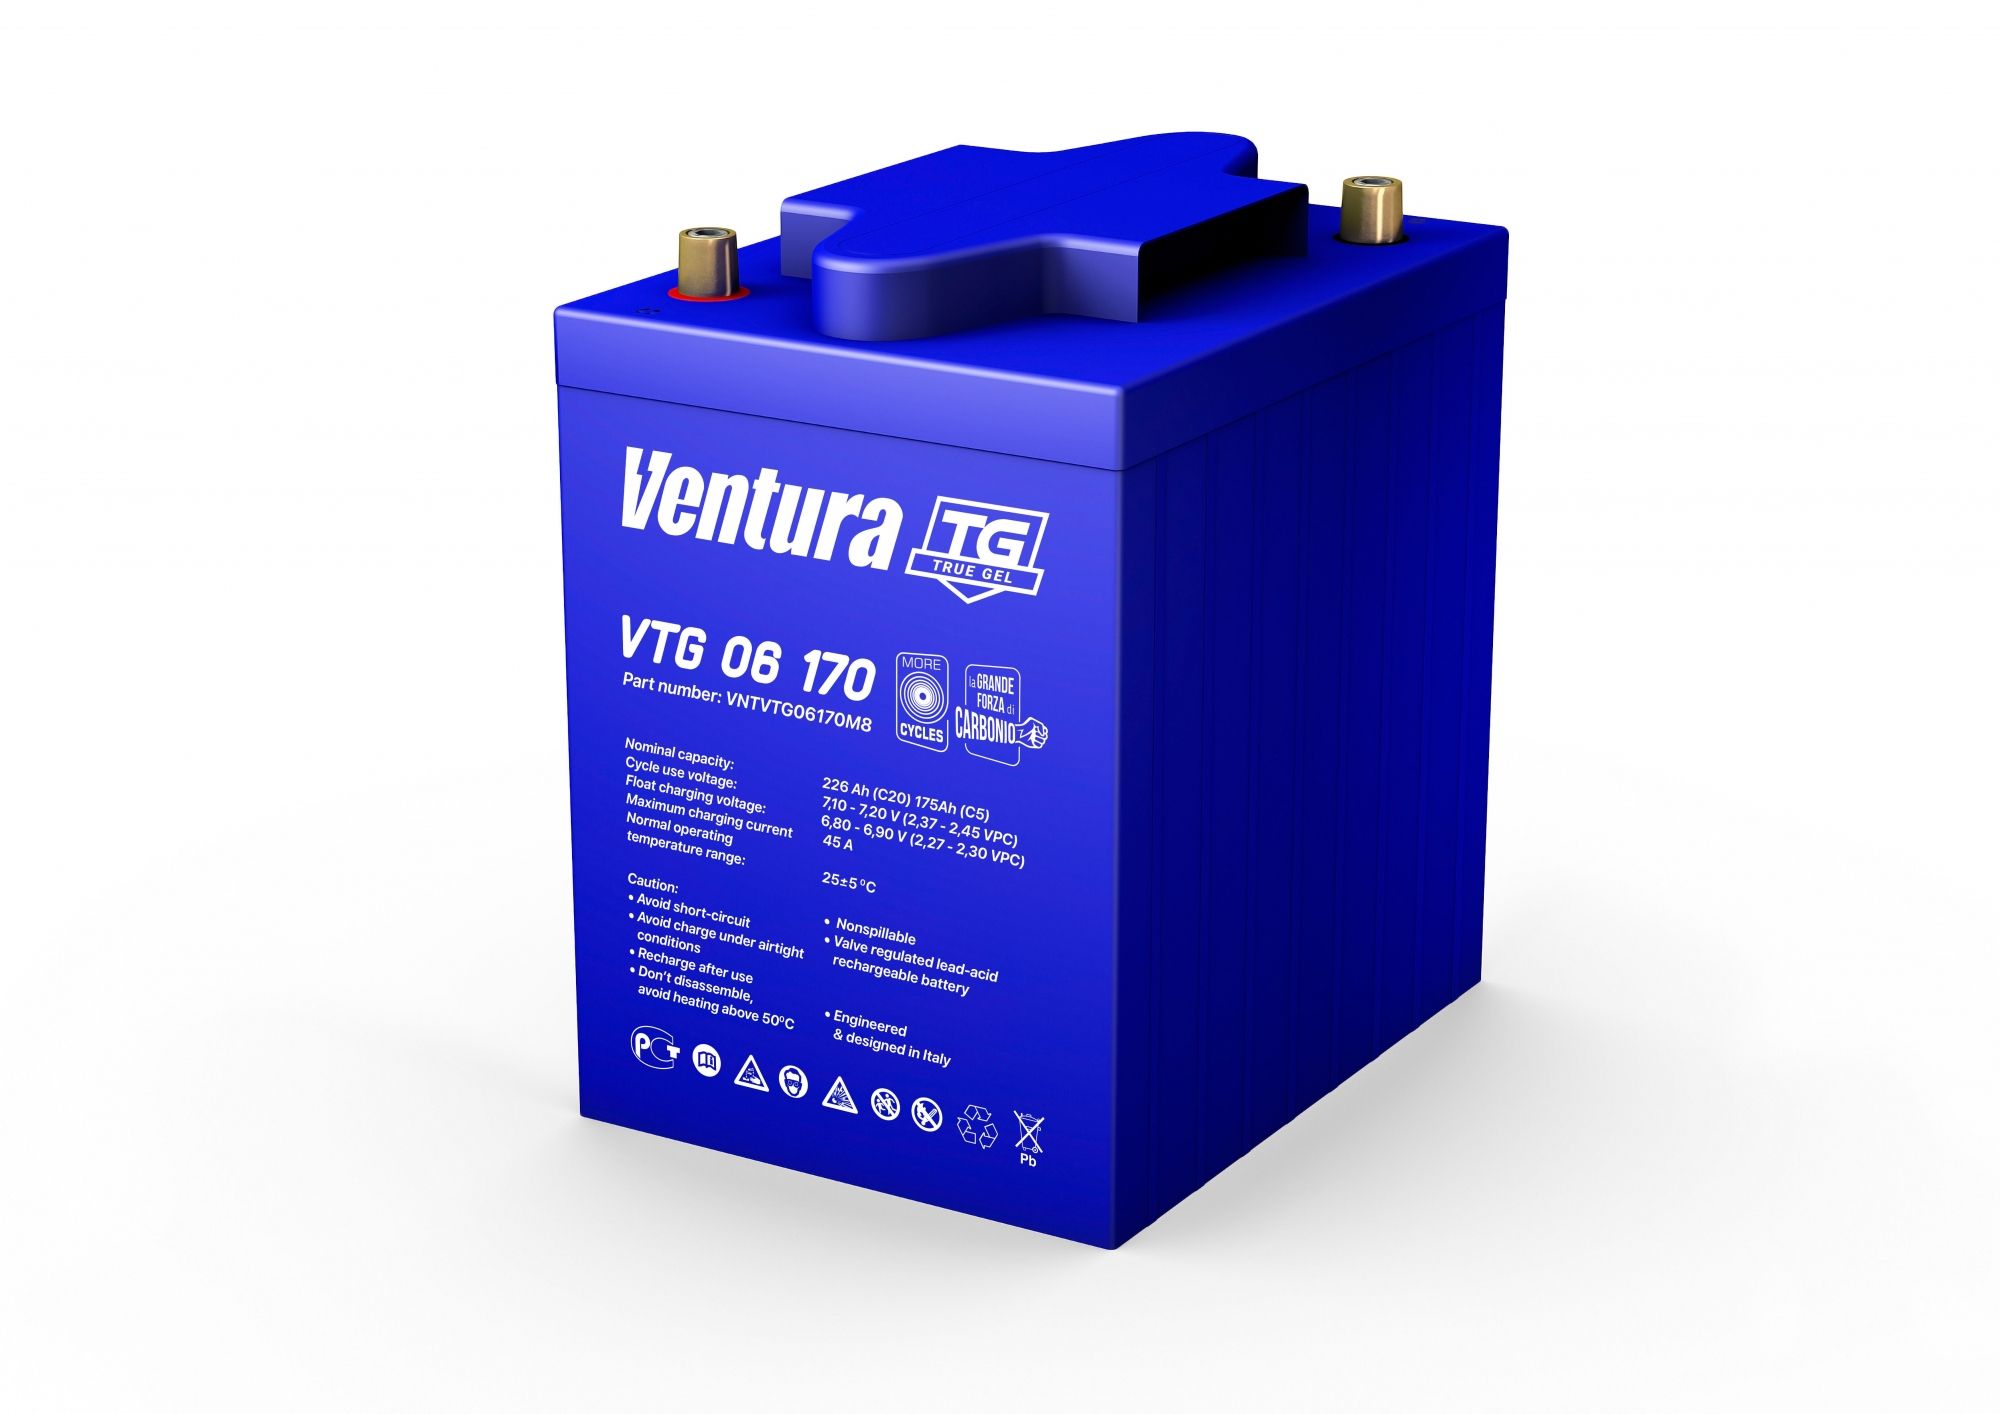 Купить Аккумулятор Ventura VTG 06 170 с доставкой по РФ. В интернет-магазине Grassmart.ru